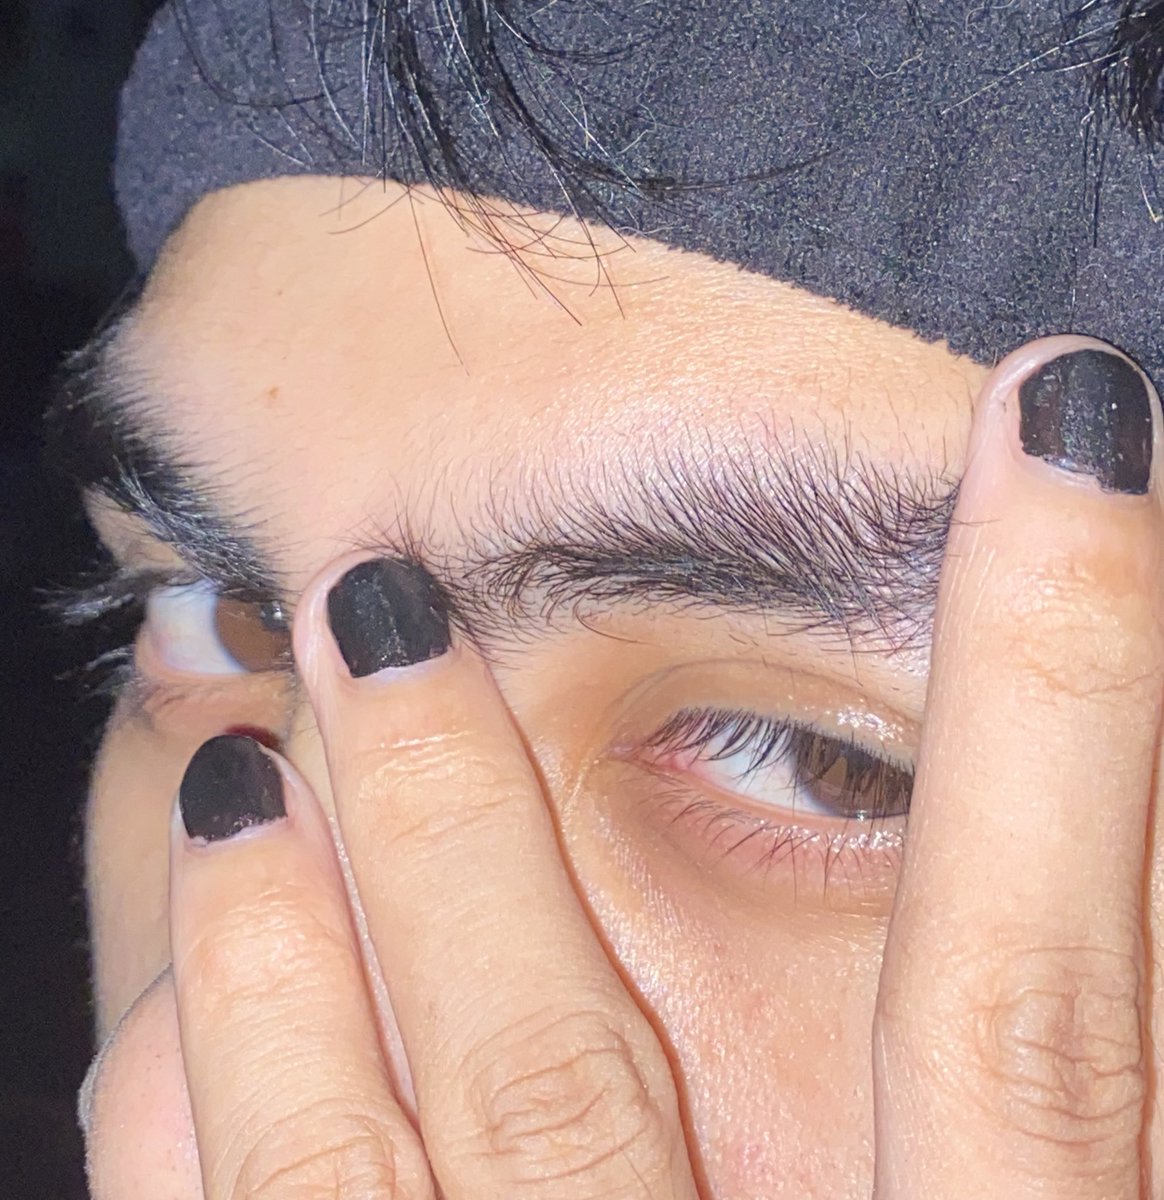 solo black nails black hair looking at viewer 1girl close-up nail polish general  illustration images